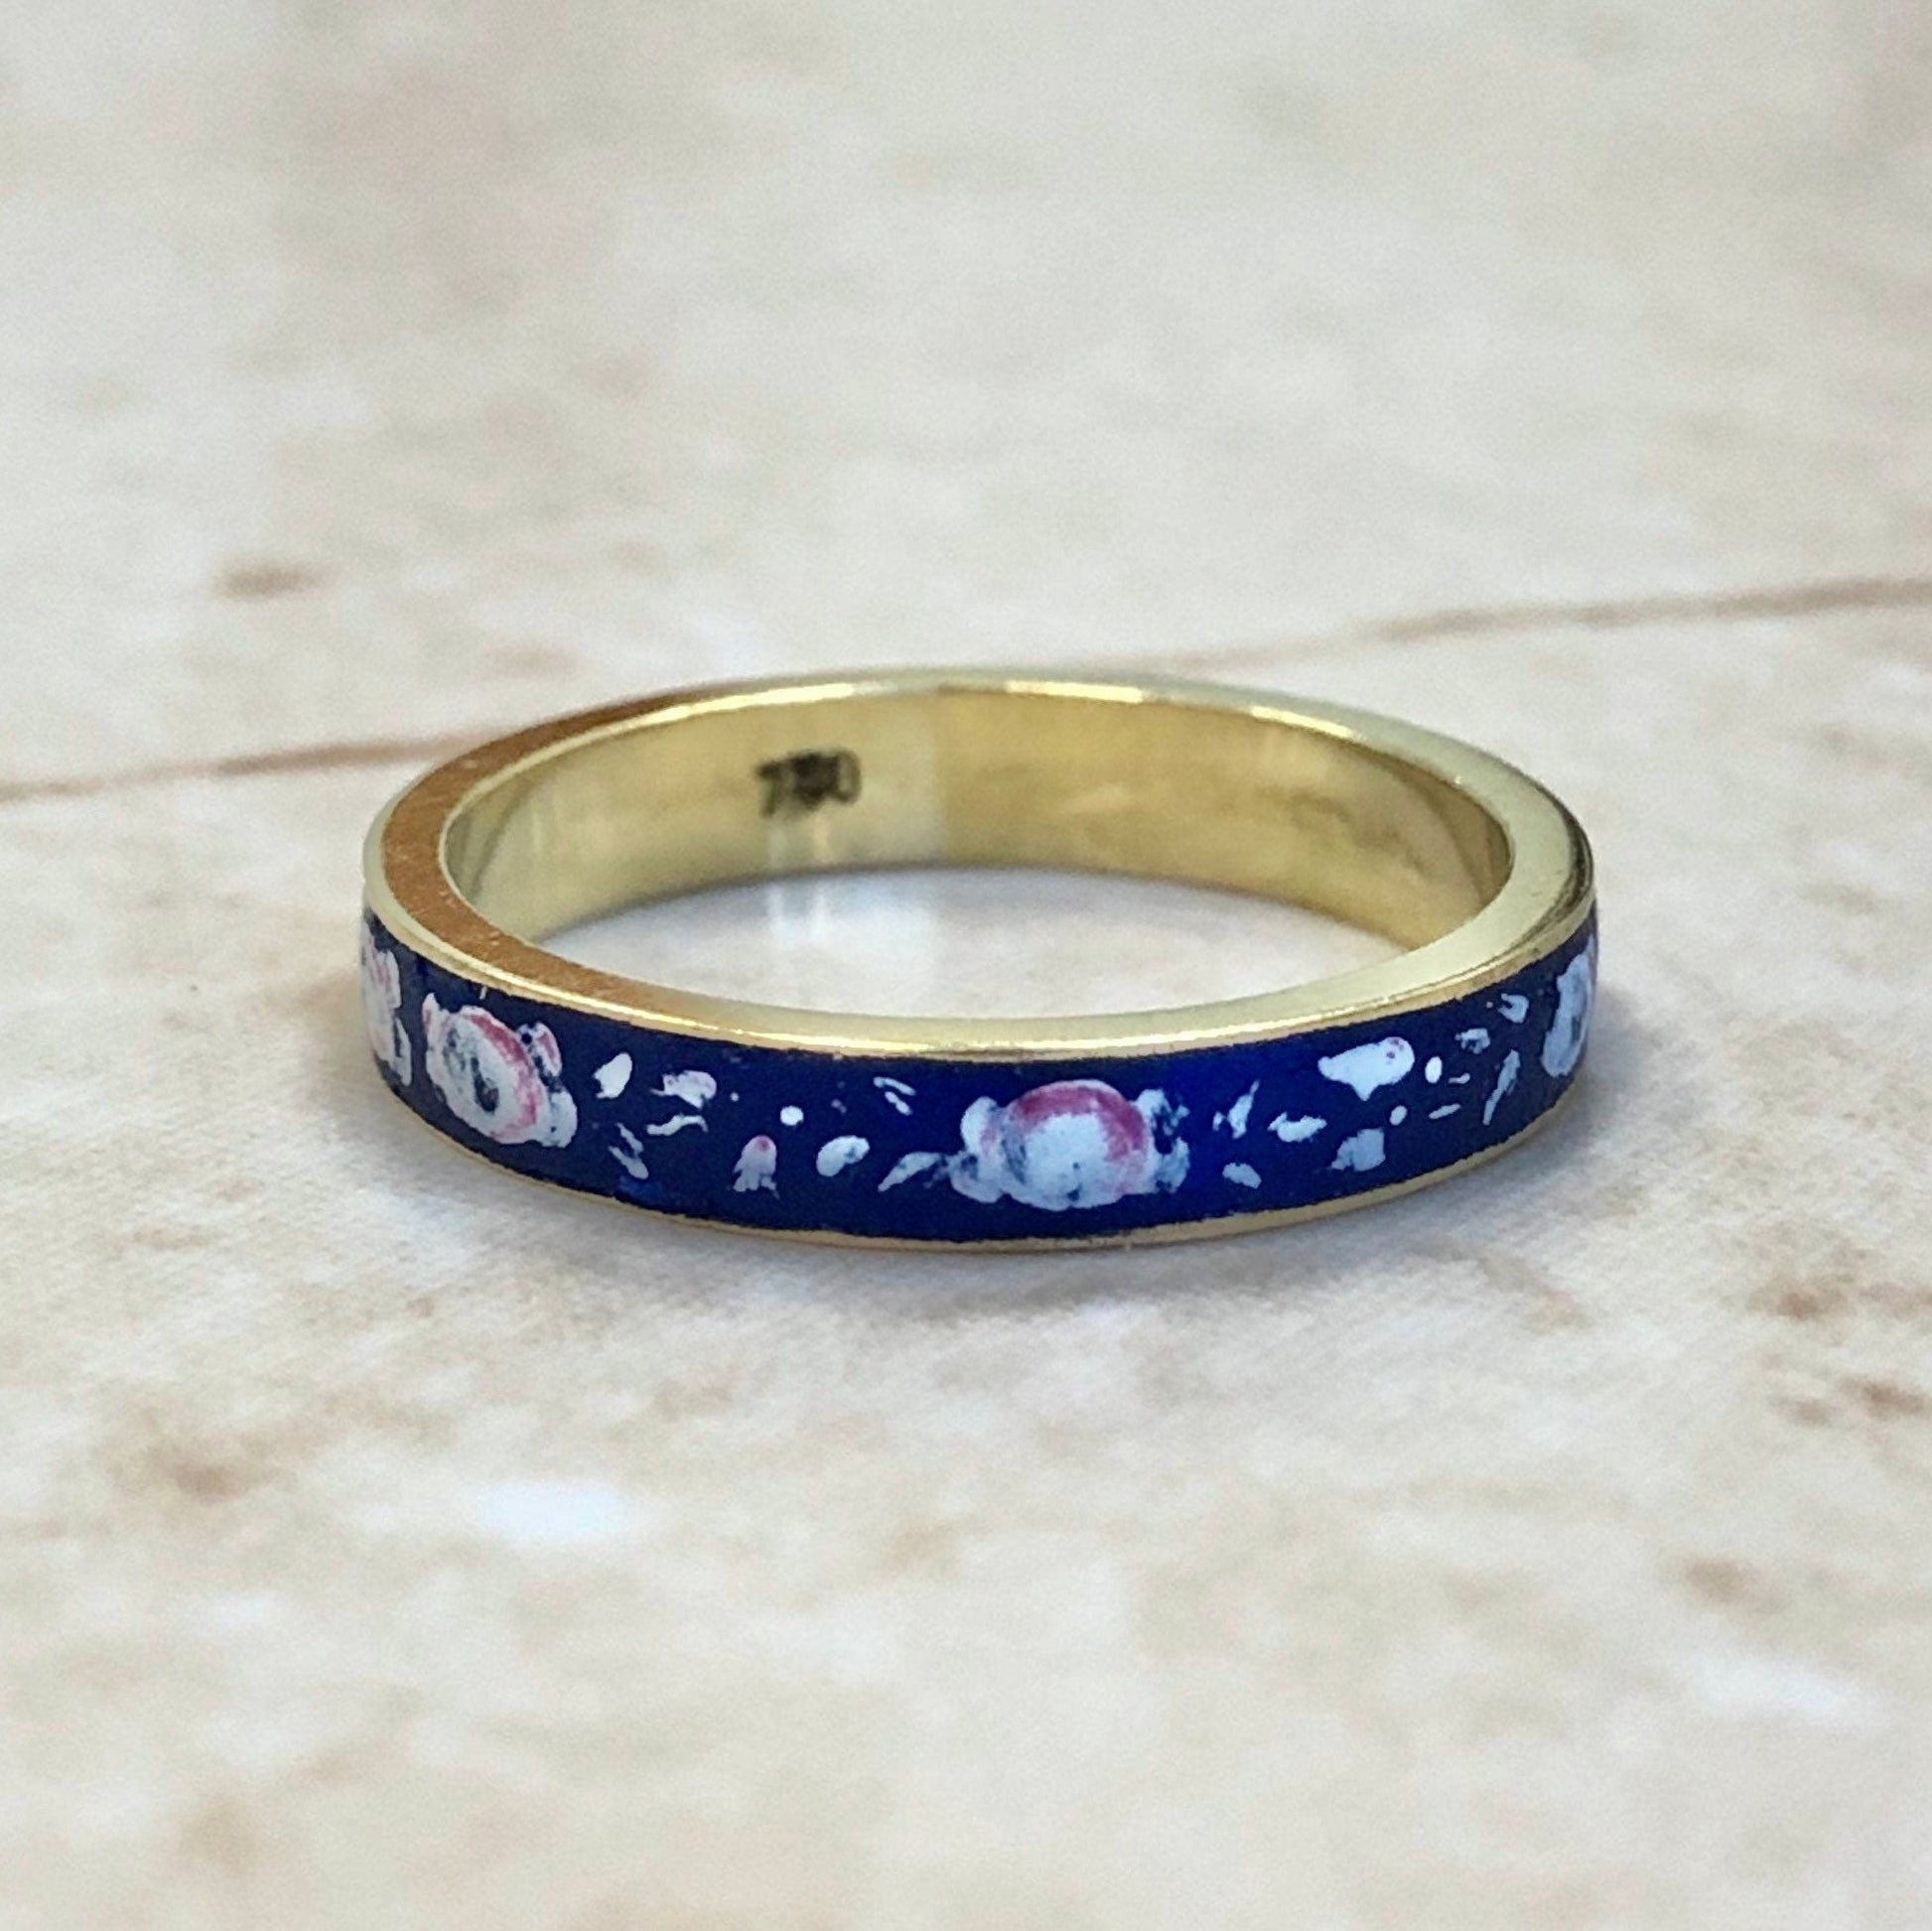 Vintage 18 Karat Yellow Gold & Enamel Ring - Wedding Band - Birthday Gift - Bridal Ring - Vintage Ring